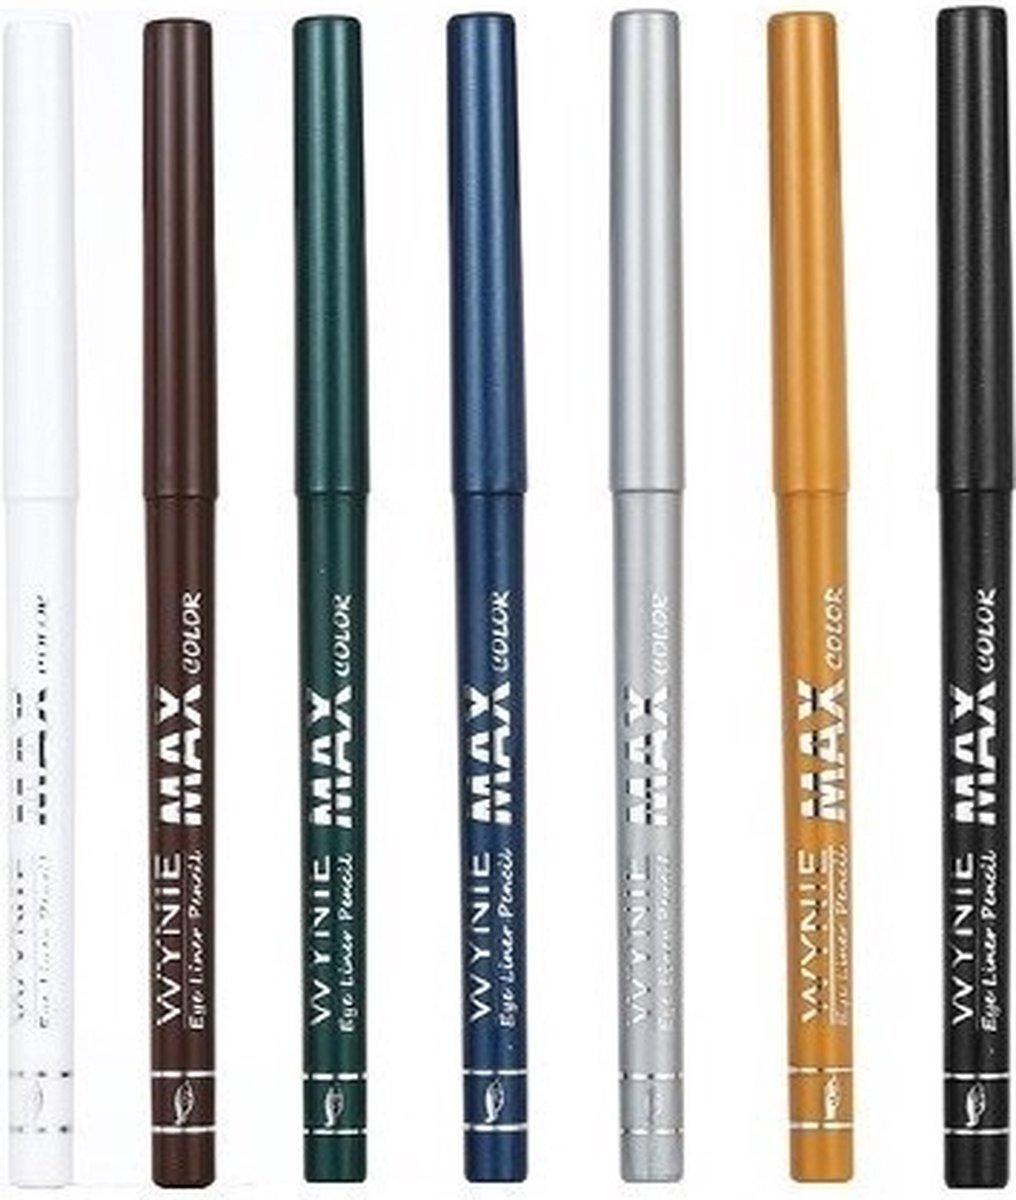 Wynie Cosmetics Wynie – MAX Color - Set met 7 kleuren - Oogpotlood, draaibaar / Automatic Eyeliner Pencil - Zilver Goud Zwart Bruin Wit Groen Blauw